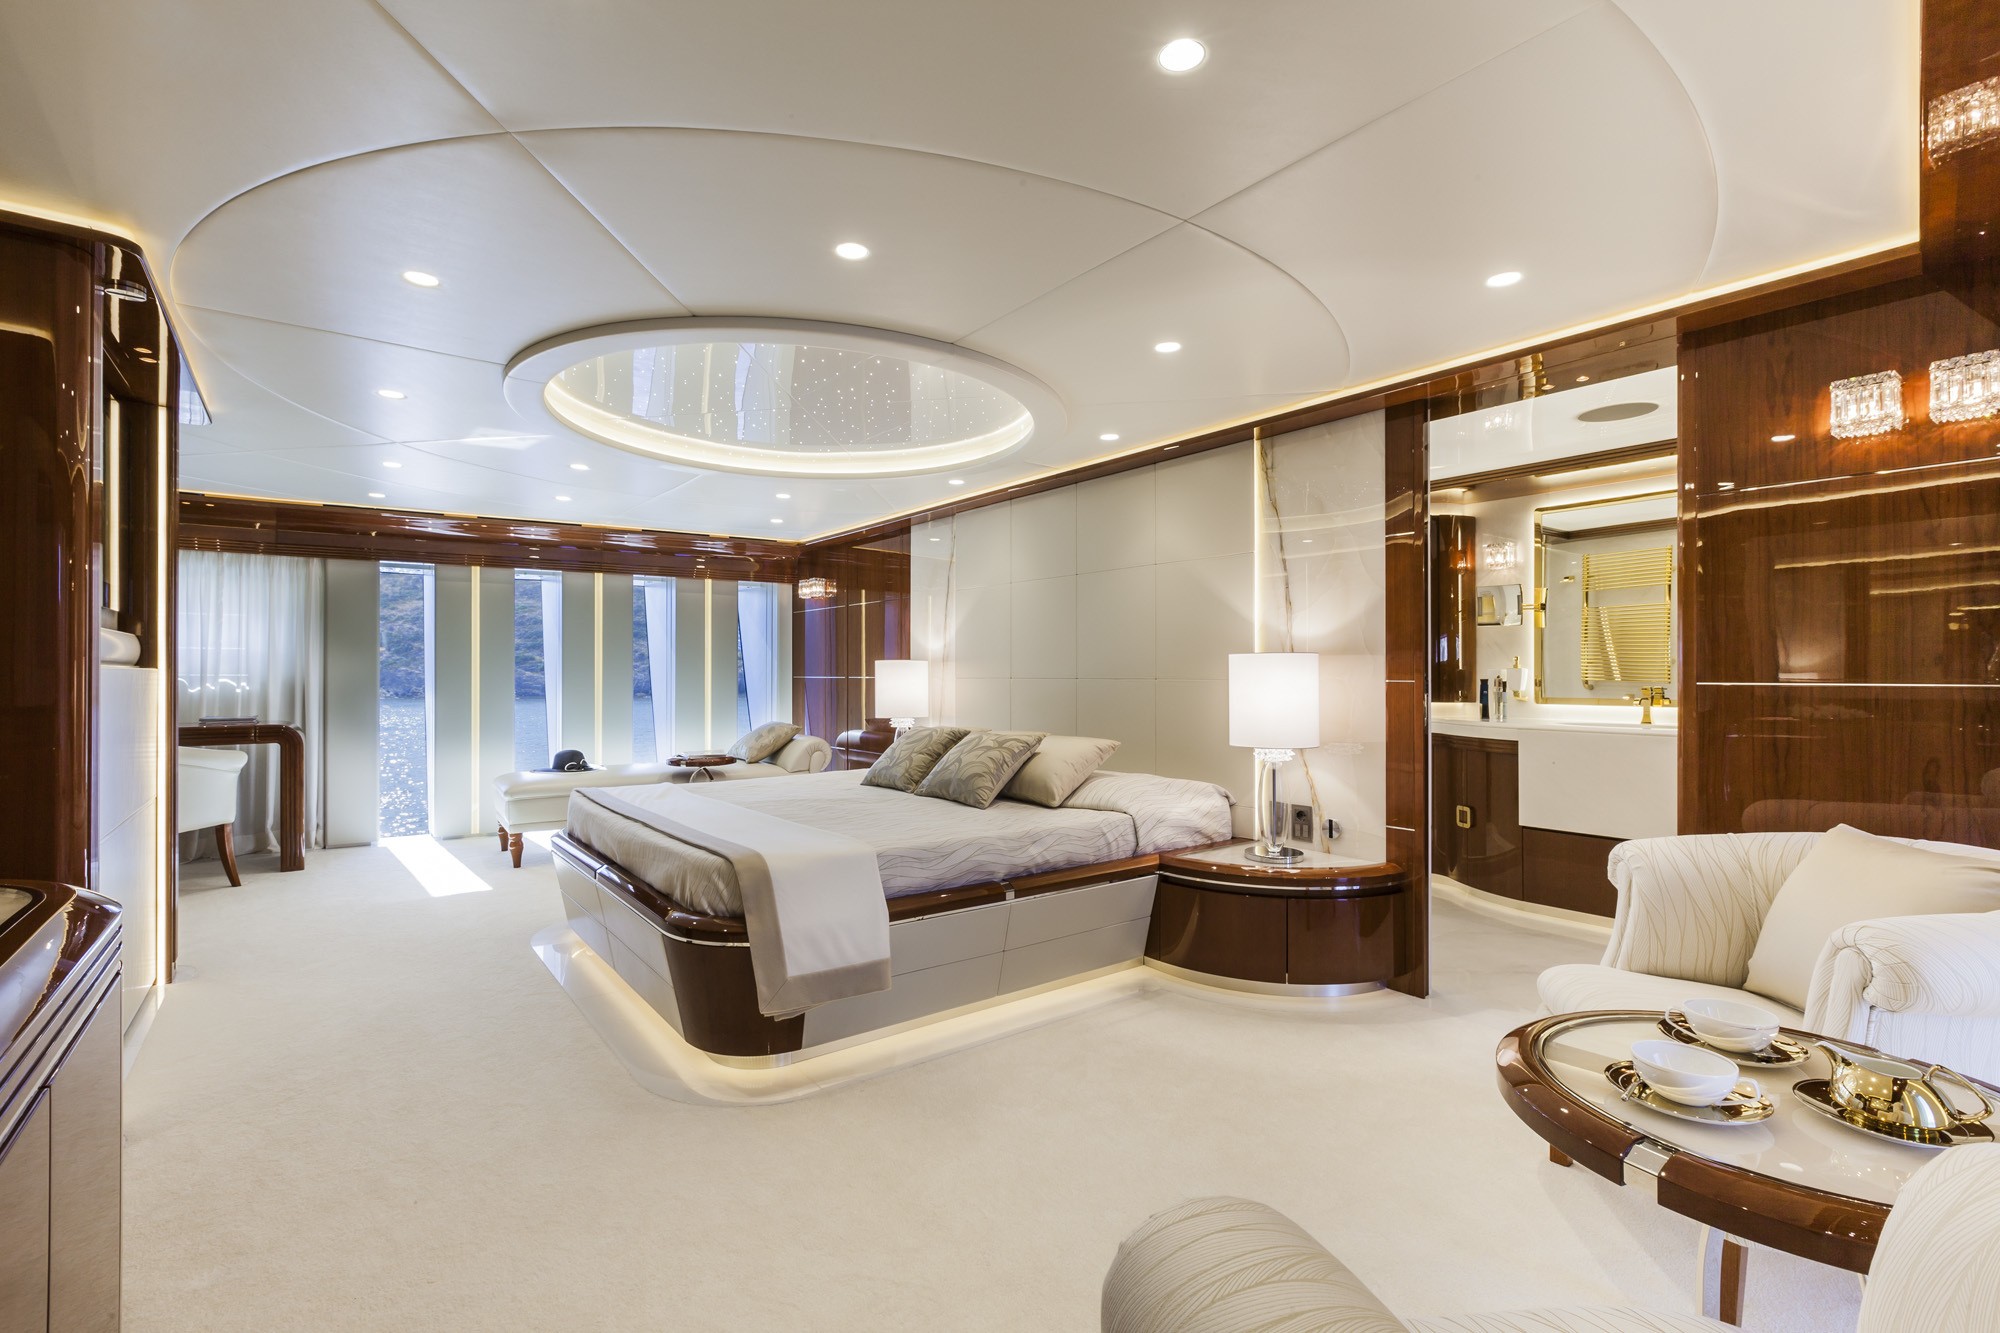 General 2000x1333 bedroom bed window pillow chair lamp interior interior design luxury indoors room